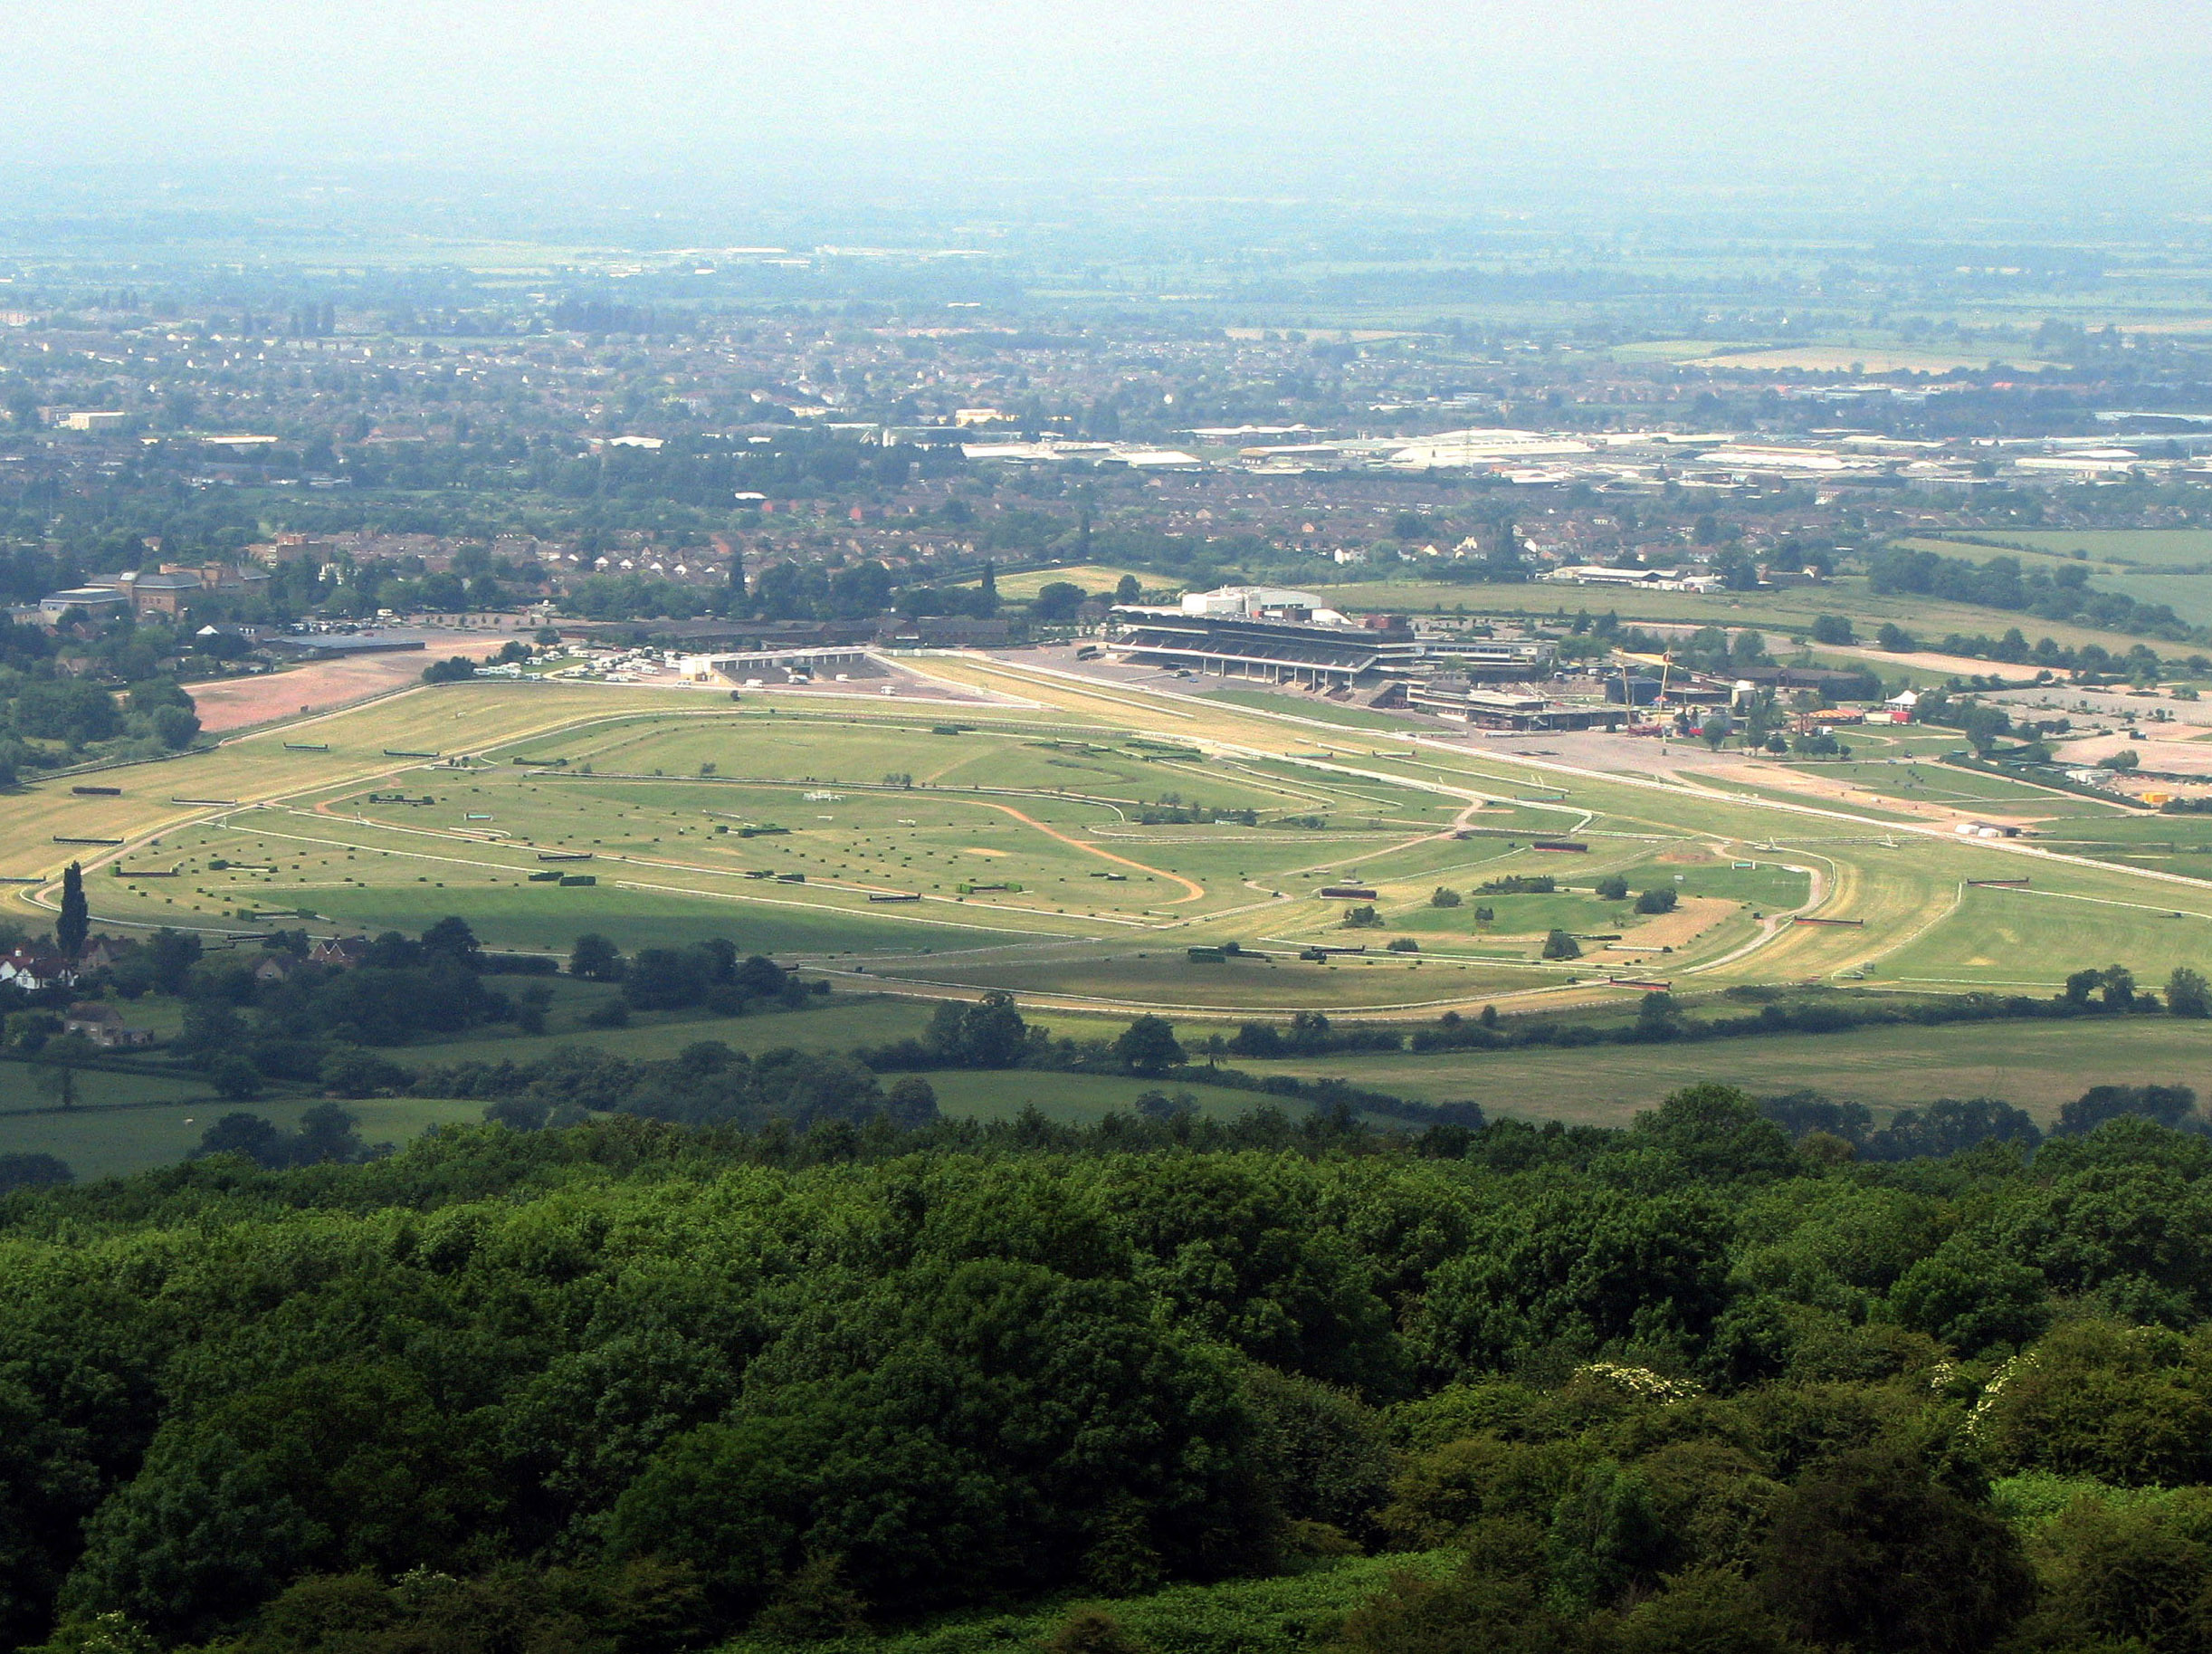 Cheltenham Racecourse, host of the Cheltenham Festival